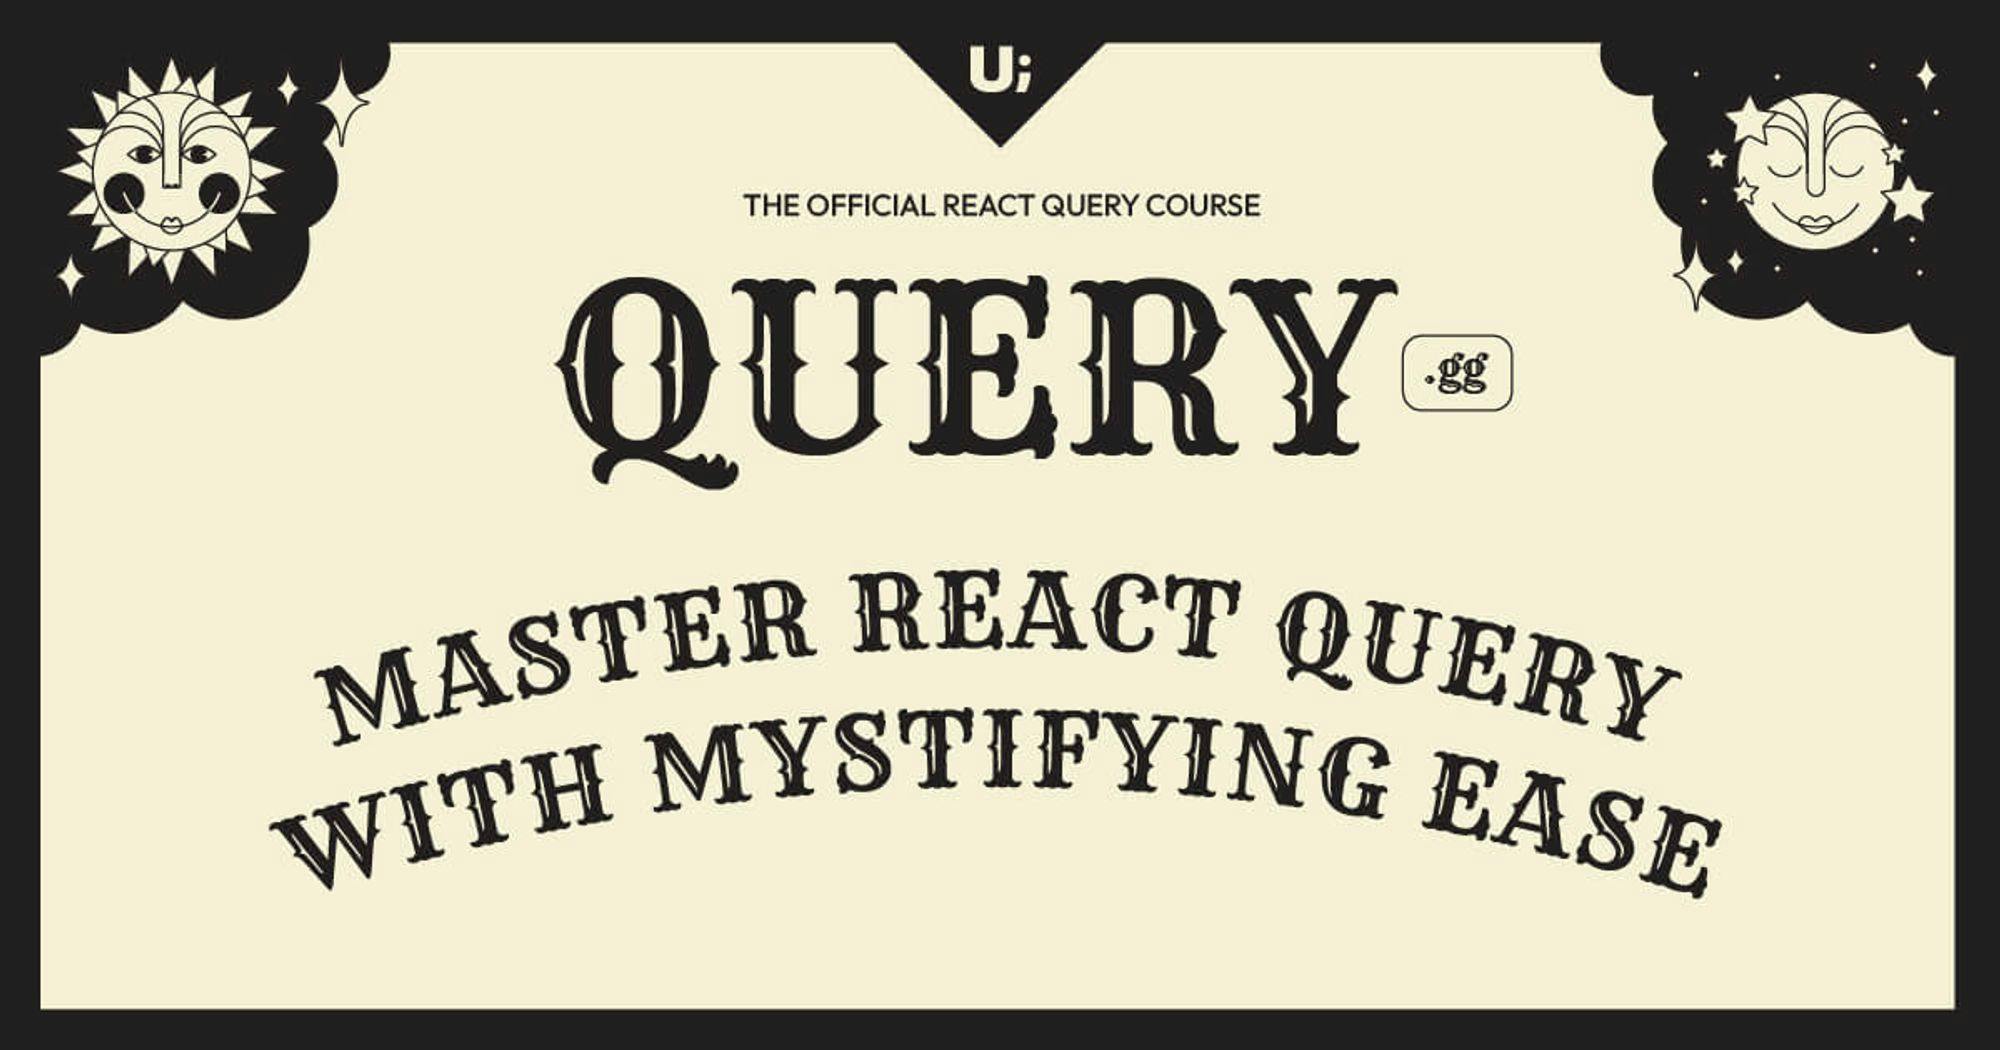 The Official React Query Course - 🔮 query.gg